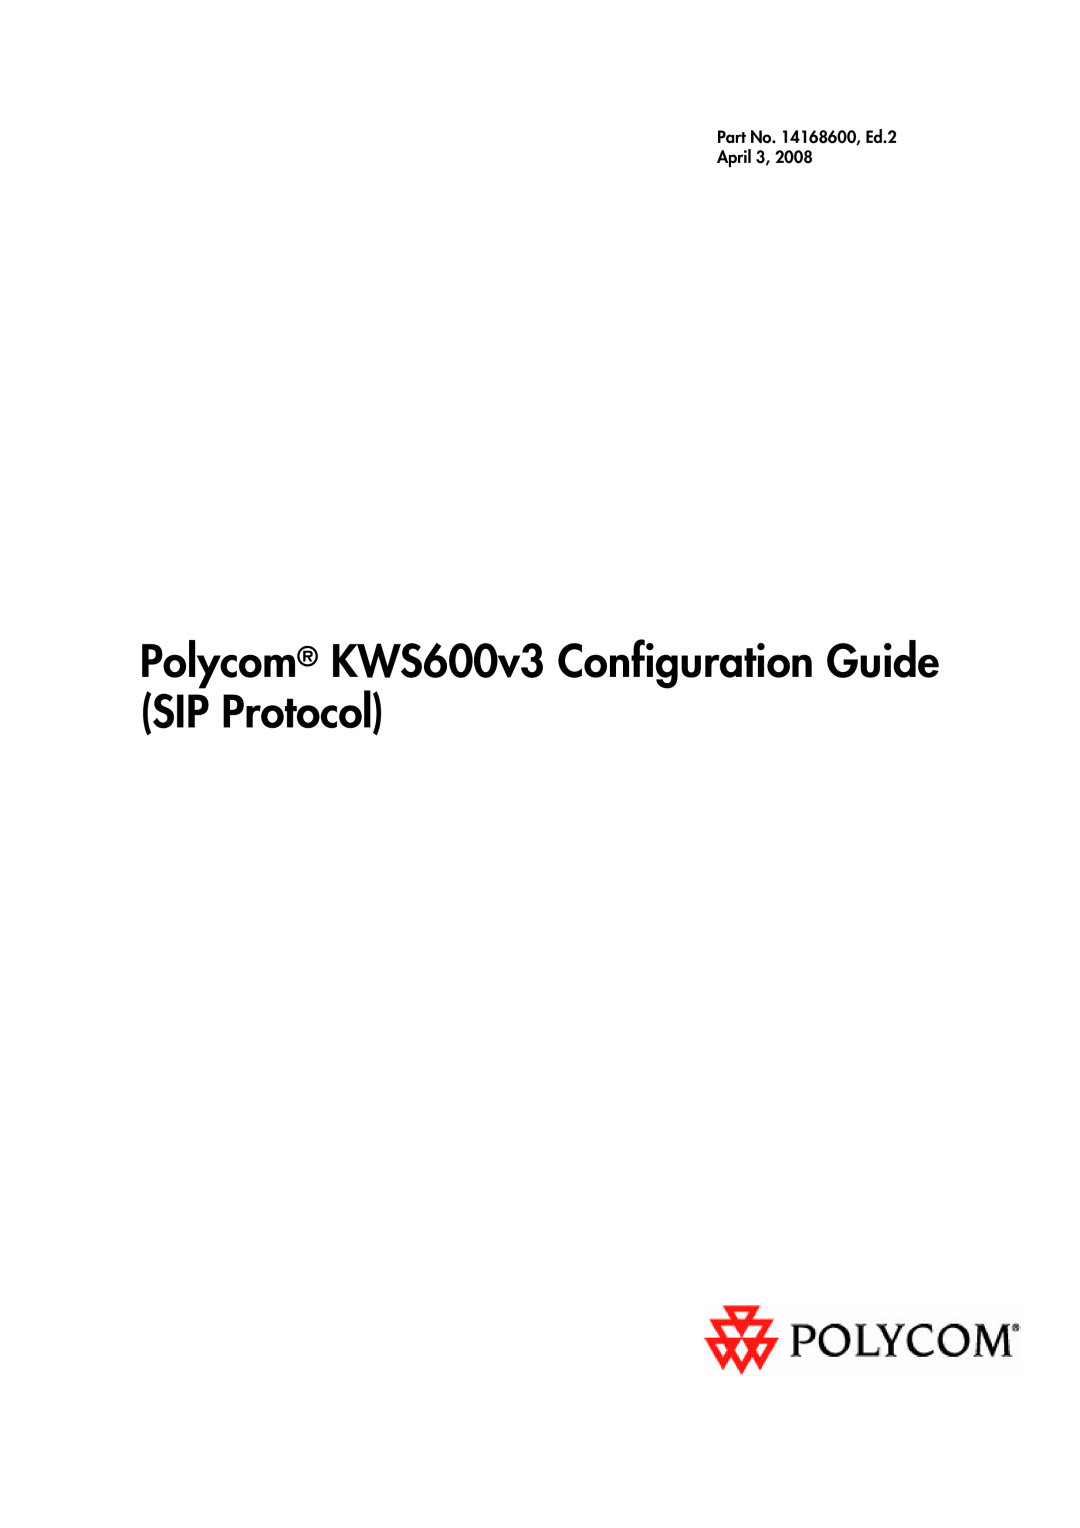 Polycom manual Polycom KWS600v3 Configuration Guide SIP Protocol, Part No. 14168600, Ed.2 April 3 